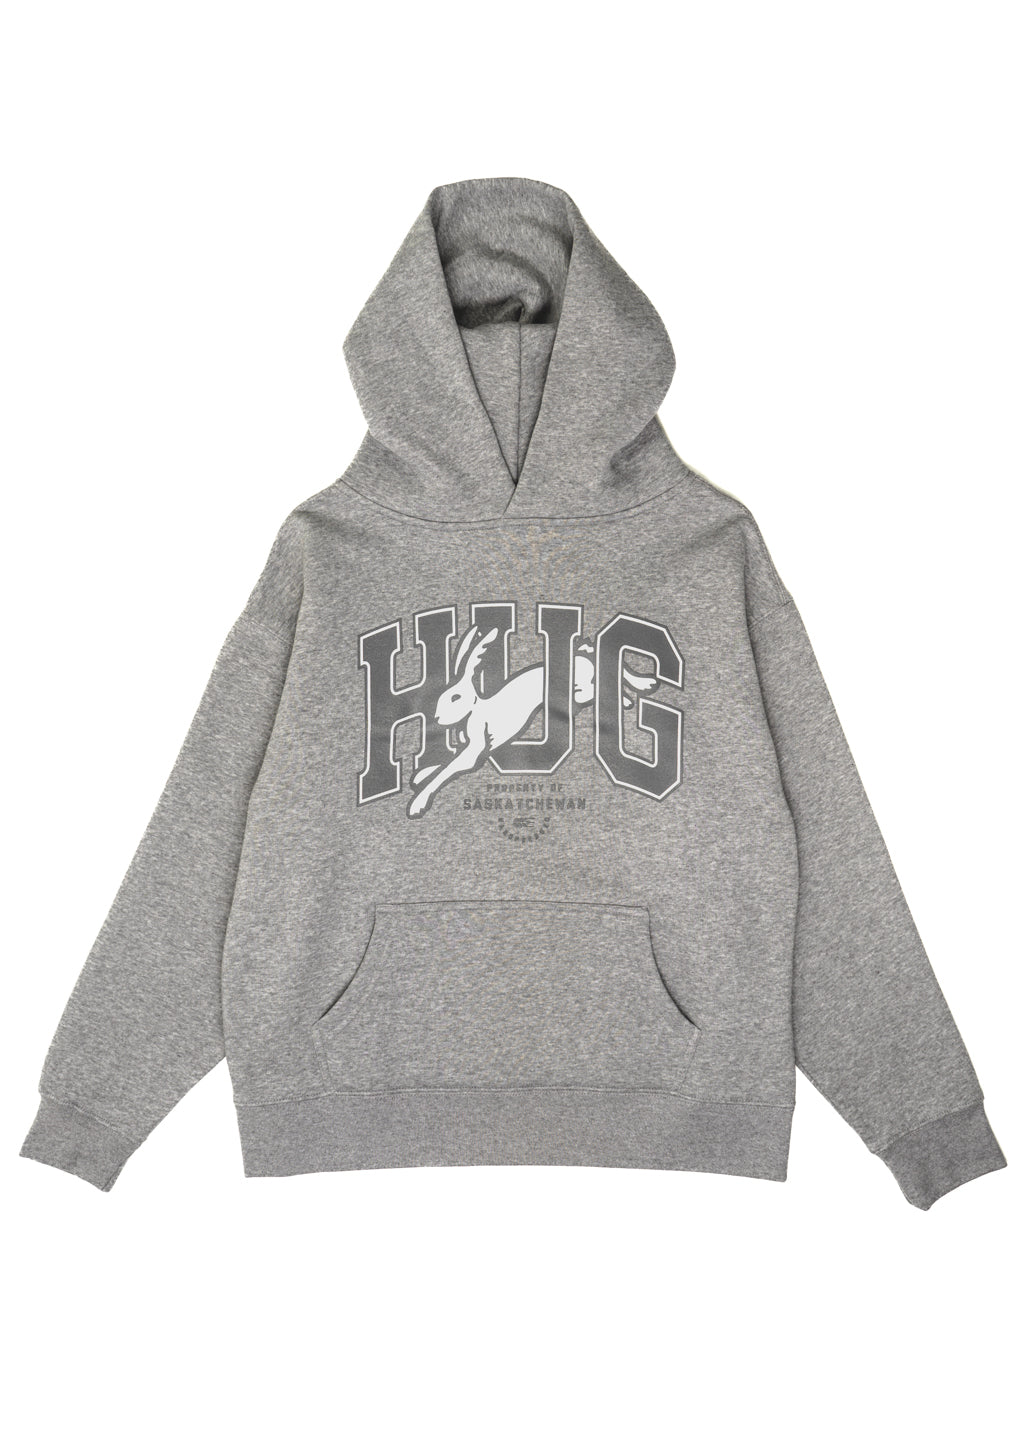 HUG | Grey | Ladies - Hardpressed Print Studio Inc.